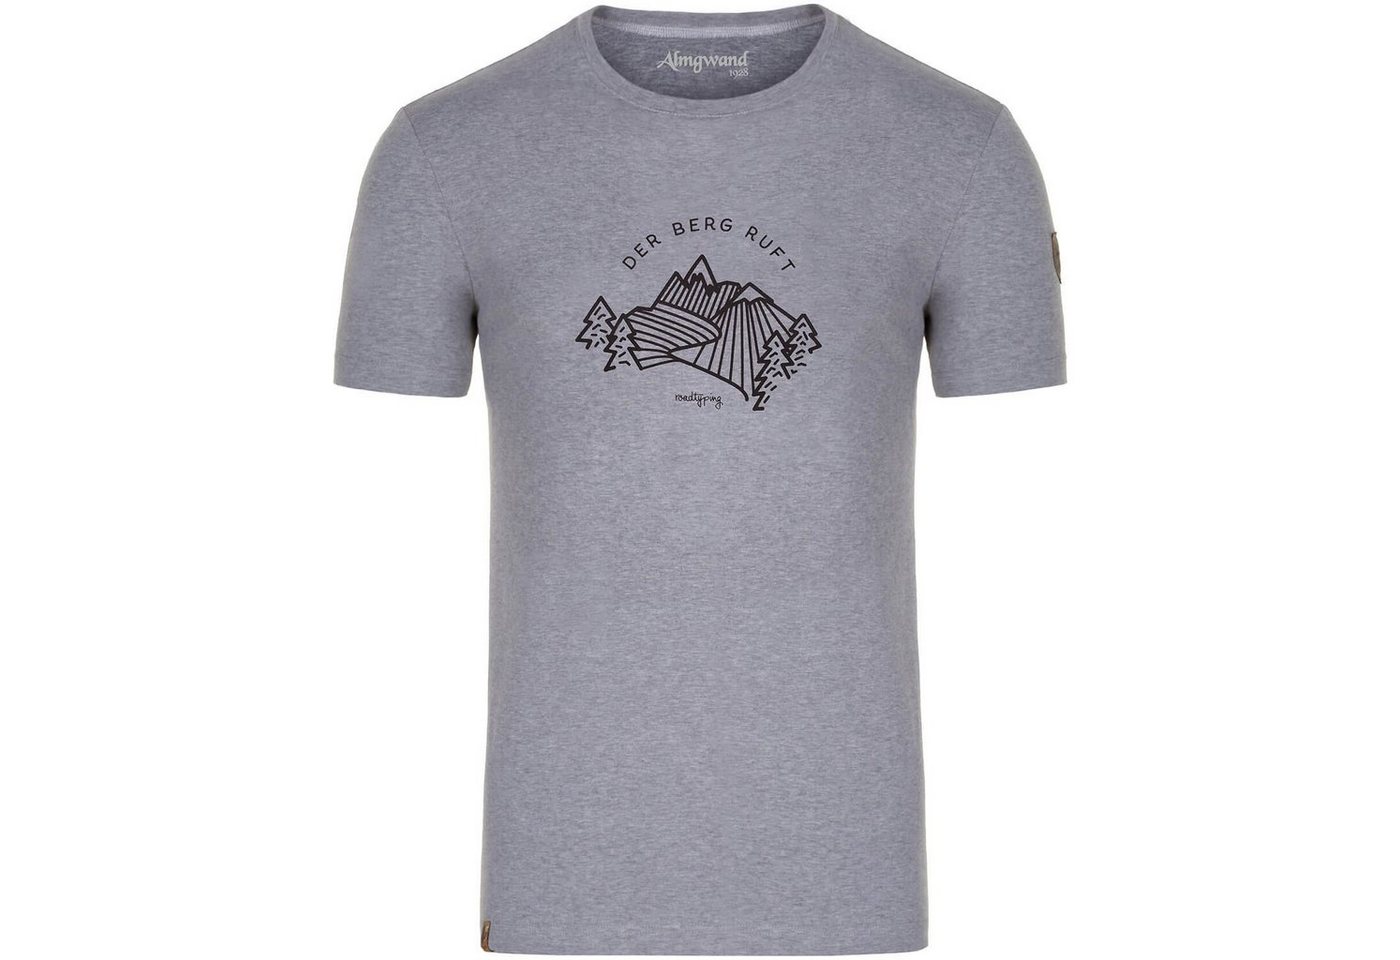 Almgwand T-Shirt T-Shirt Fischbachalm von Almgwand